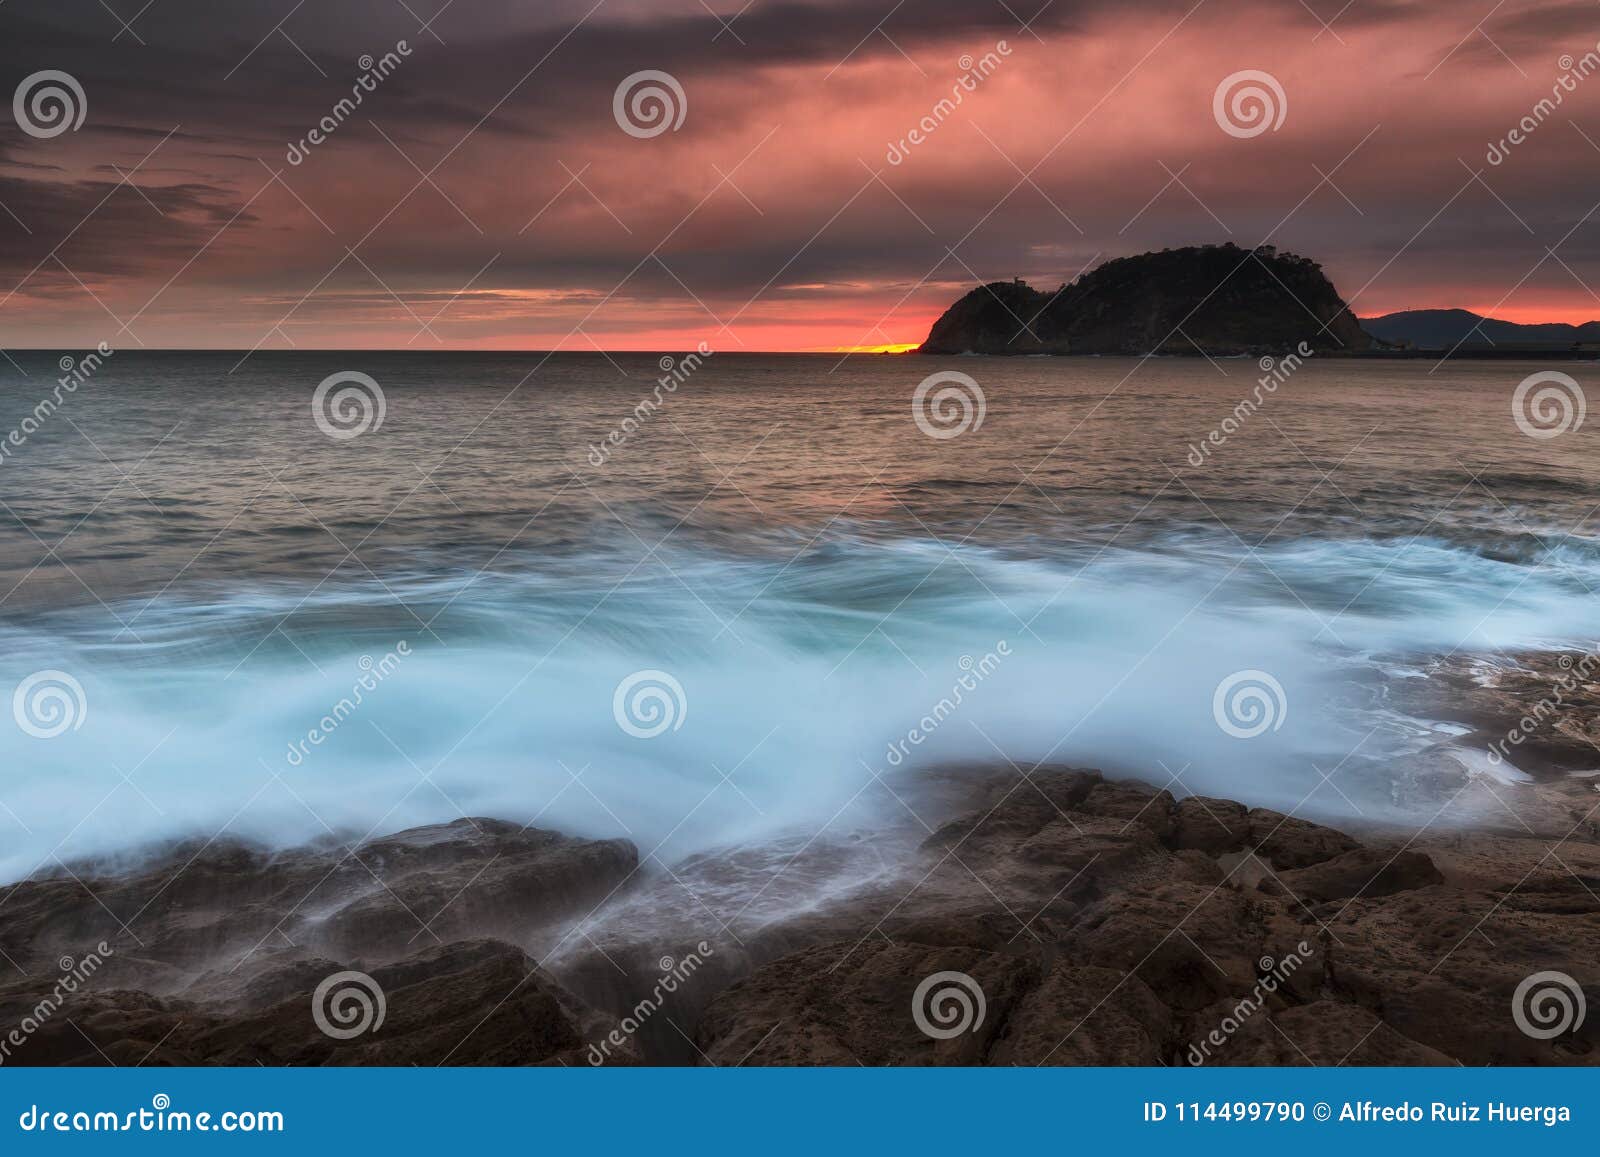 colorful sunrise in cantabric sea, getaria